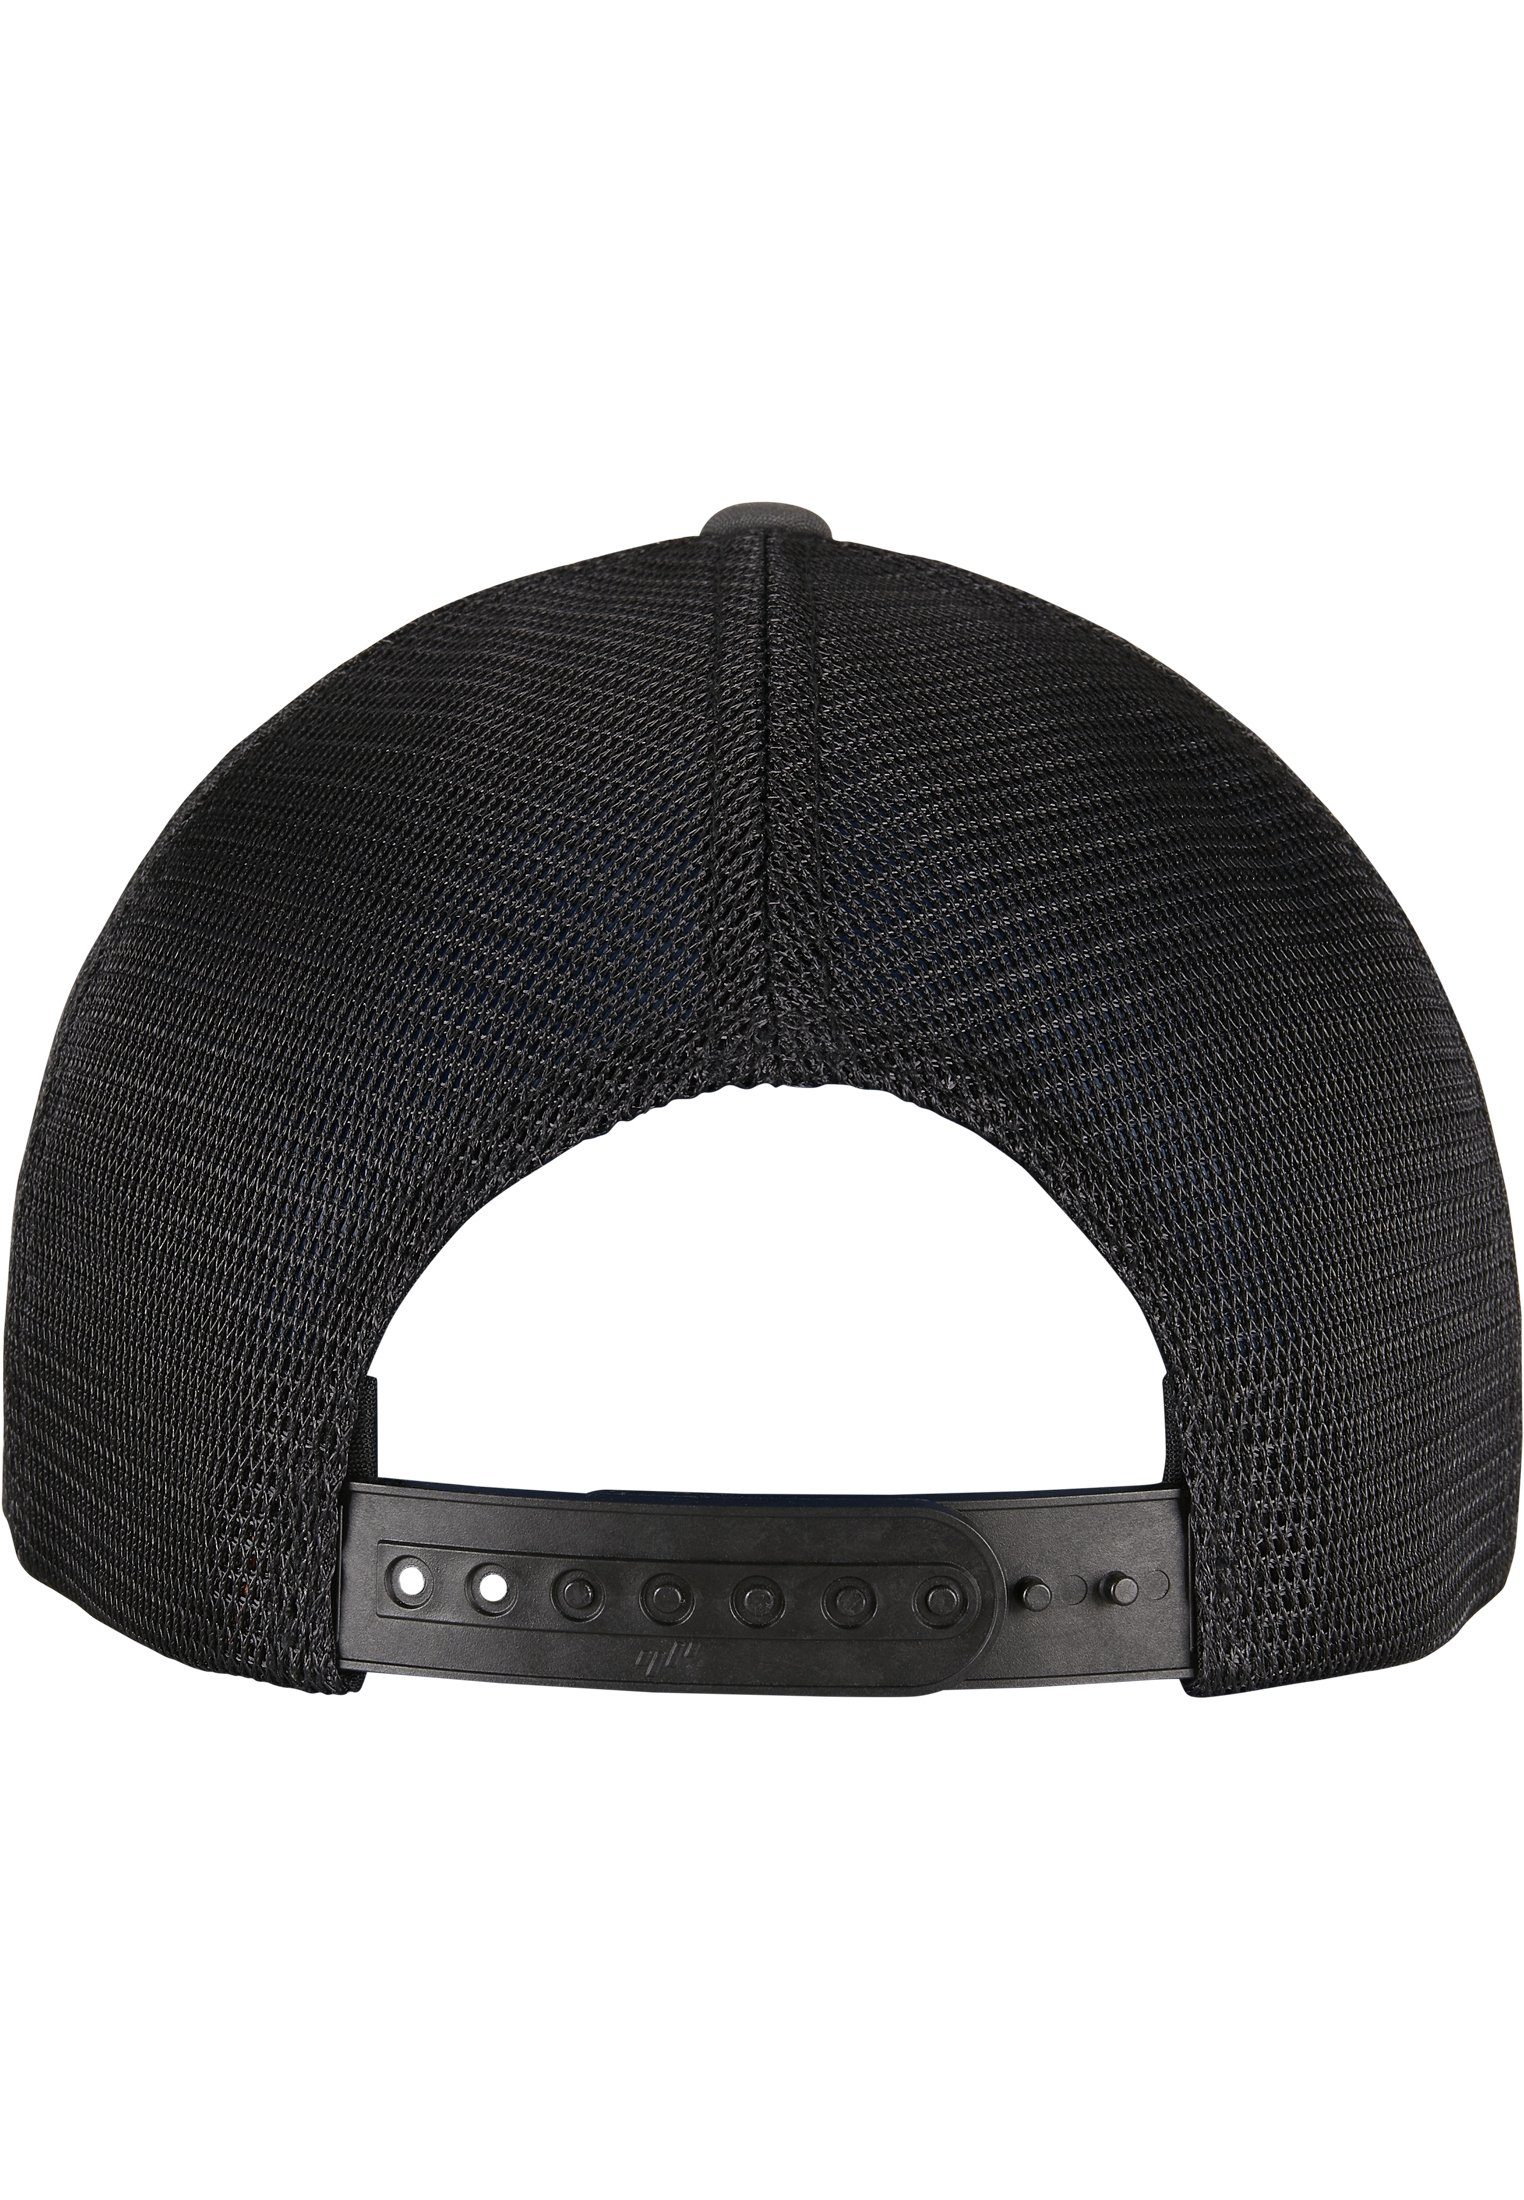 Flexfit Flex Cap Accessoires 360° Omnimesh charcoal/black 2-Tone Cap